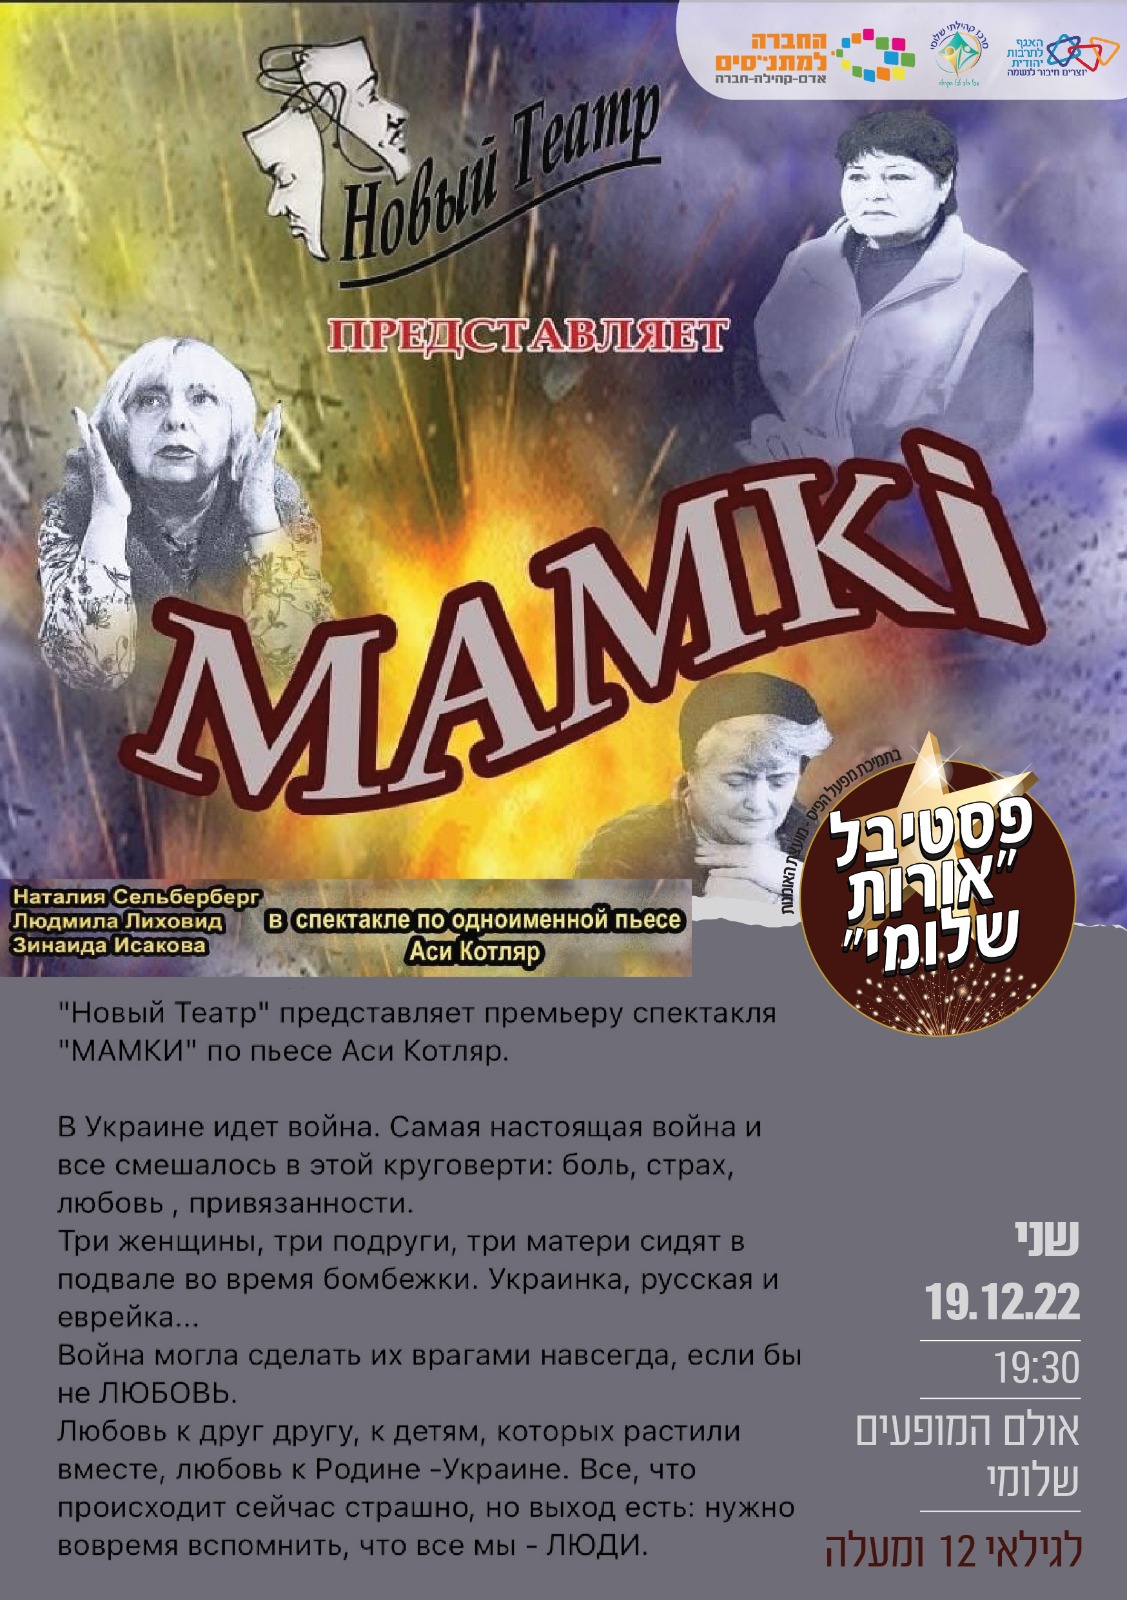 מאמיקה- הצגה לדוברי רוסית